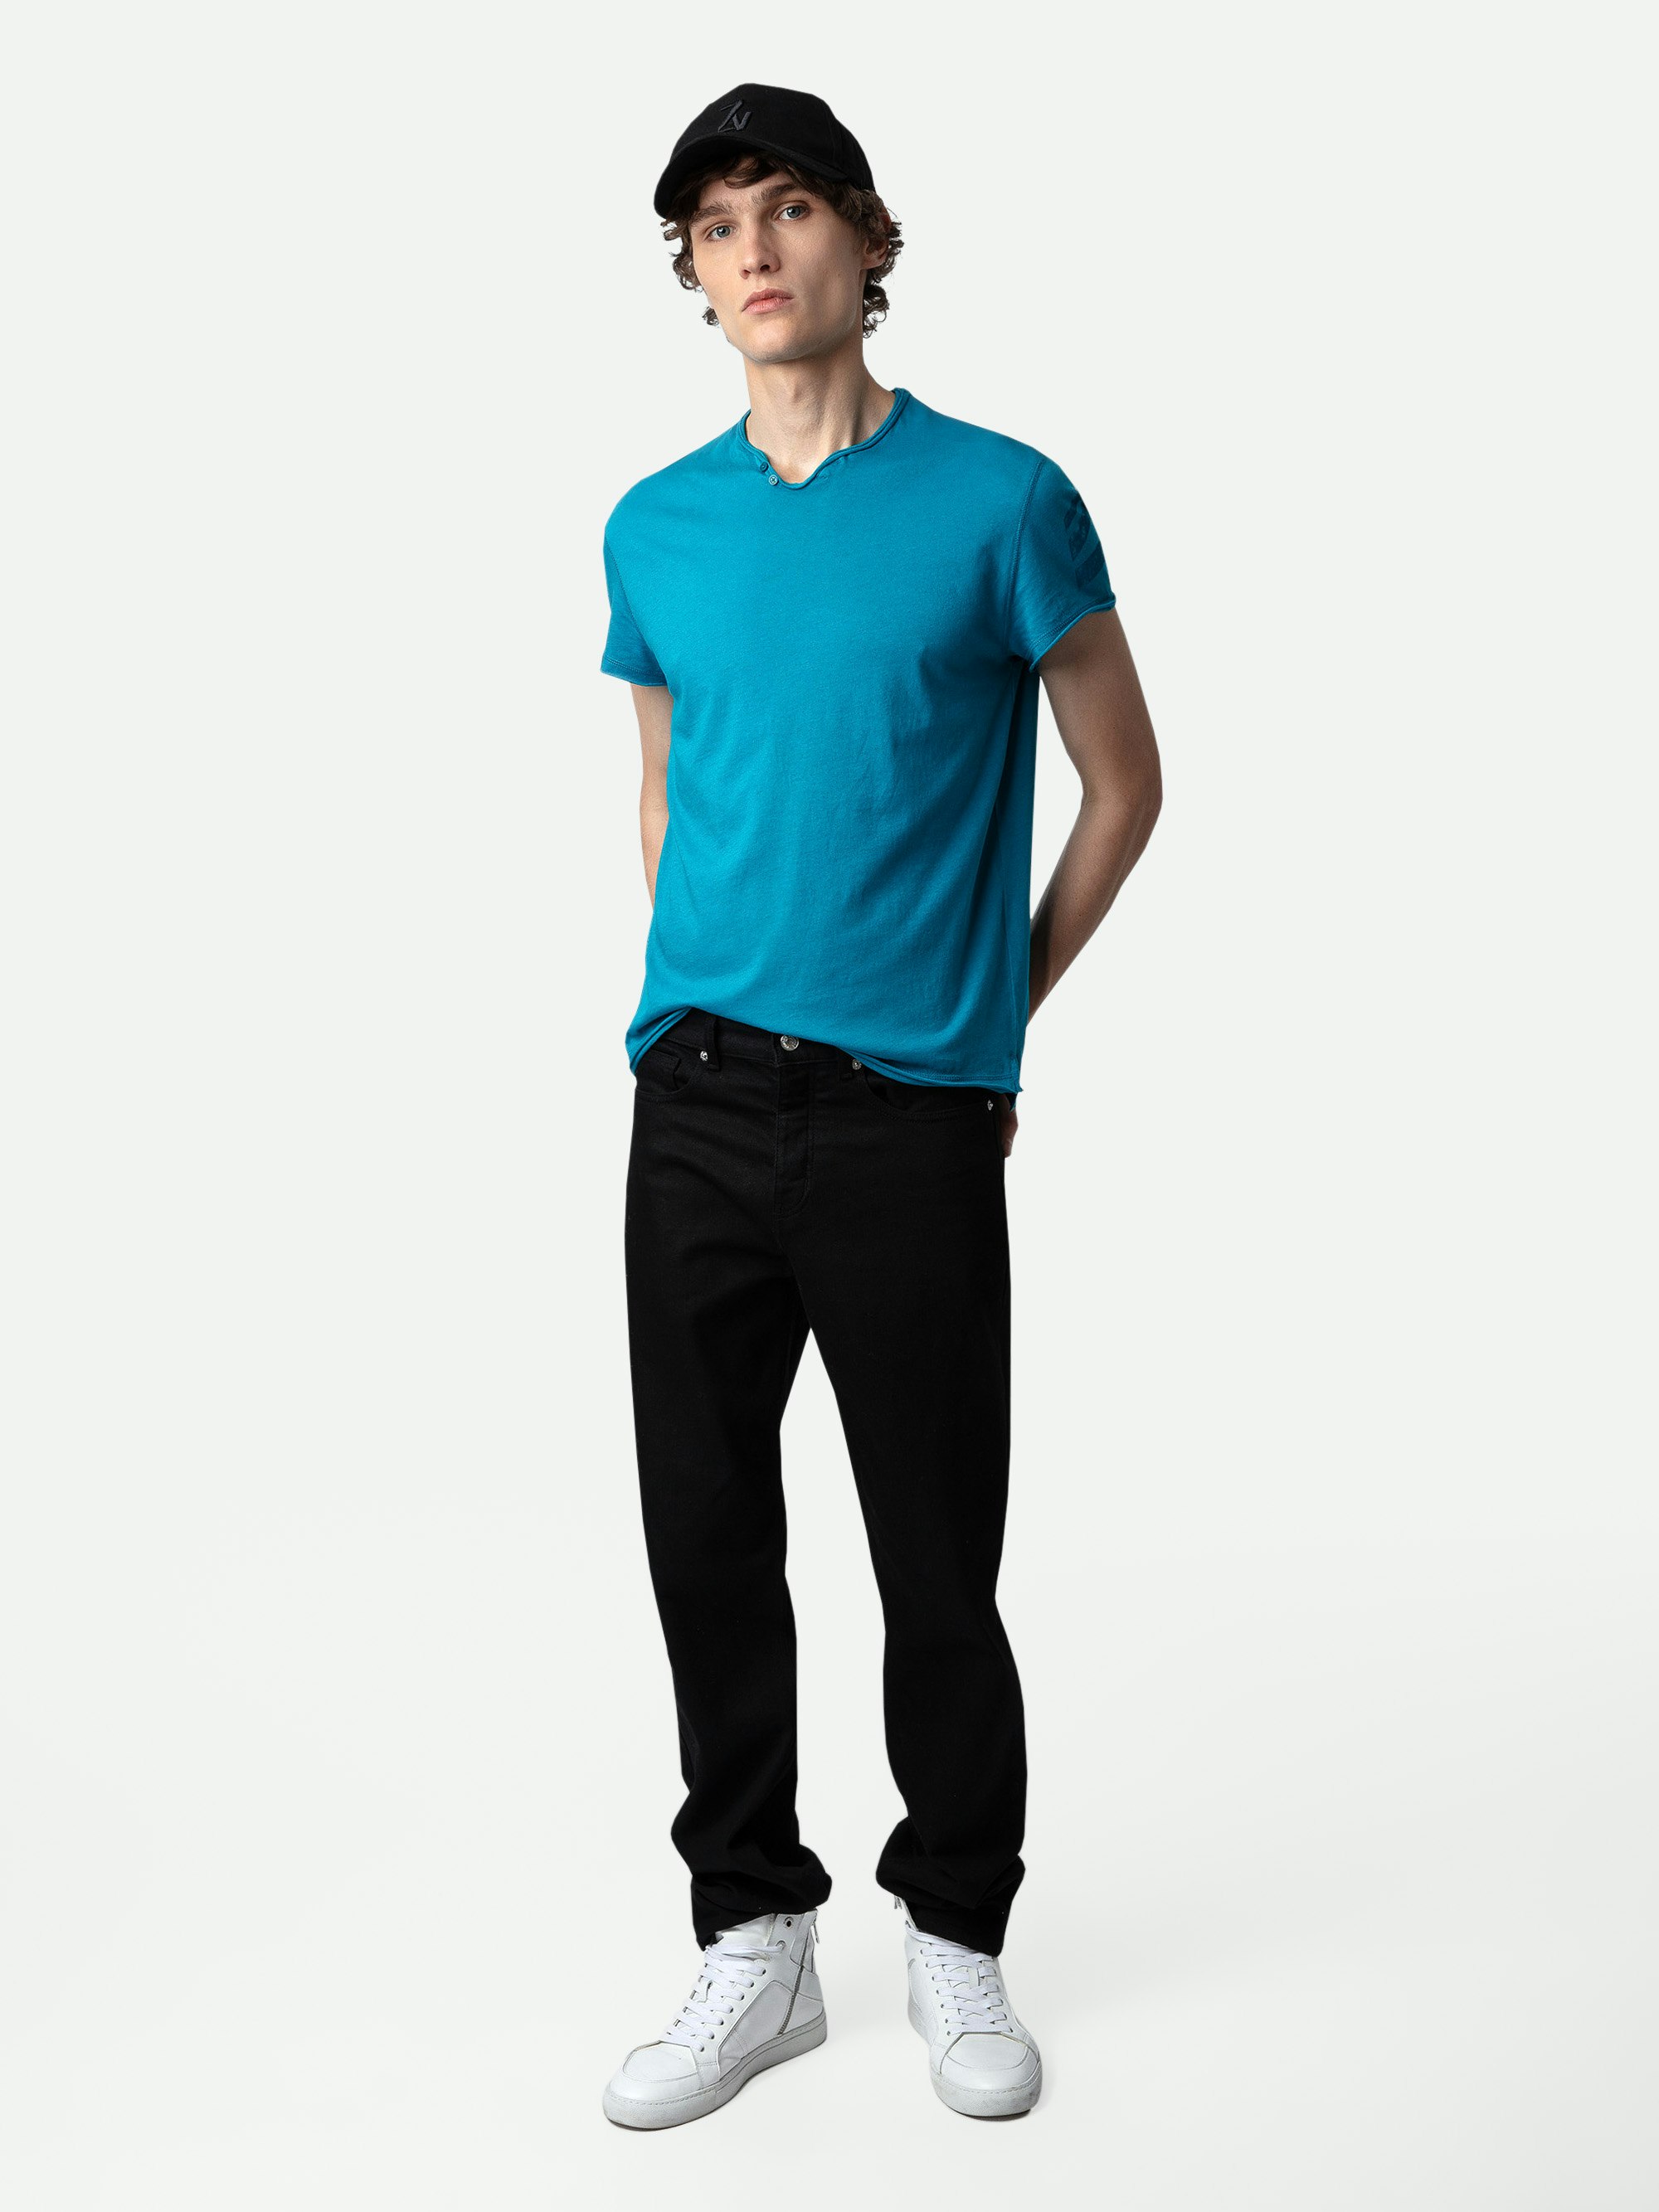 Henley-Shirt Monasti Pfeil - Kurzarm-T-Shirt mit Henley-Ausschnitt aus Baumwolle in Entenblau mit Pfeilen auf dem linken Ärmel.